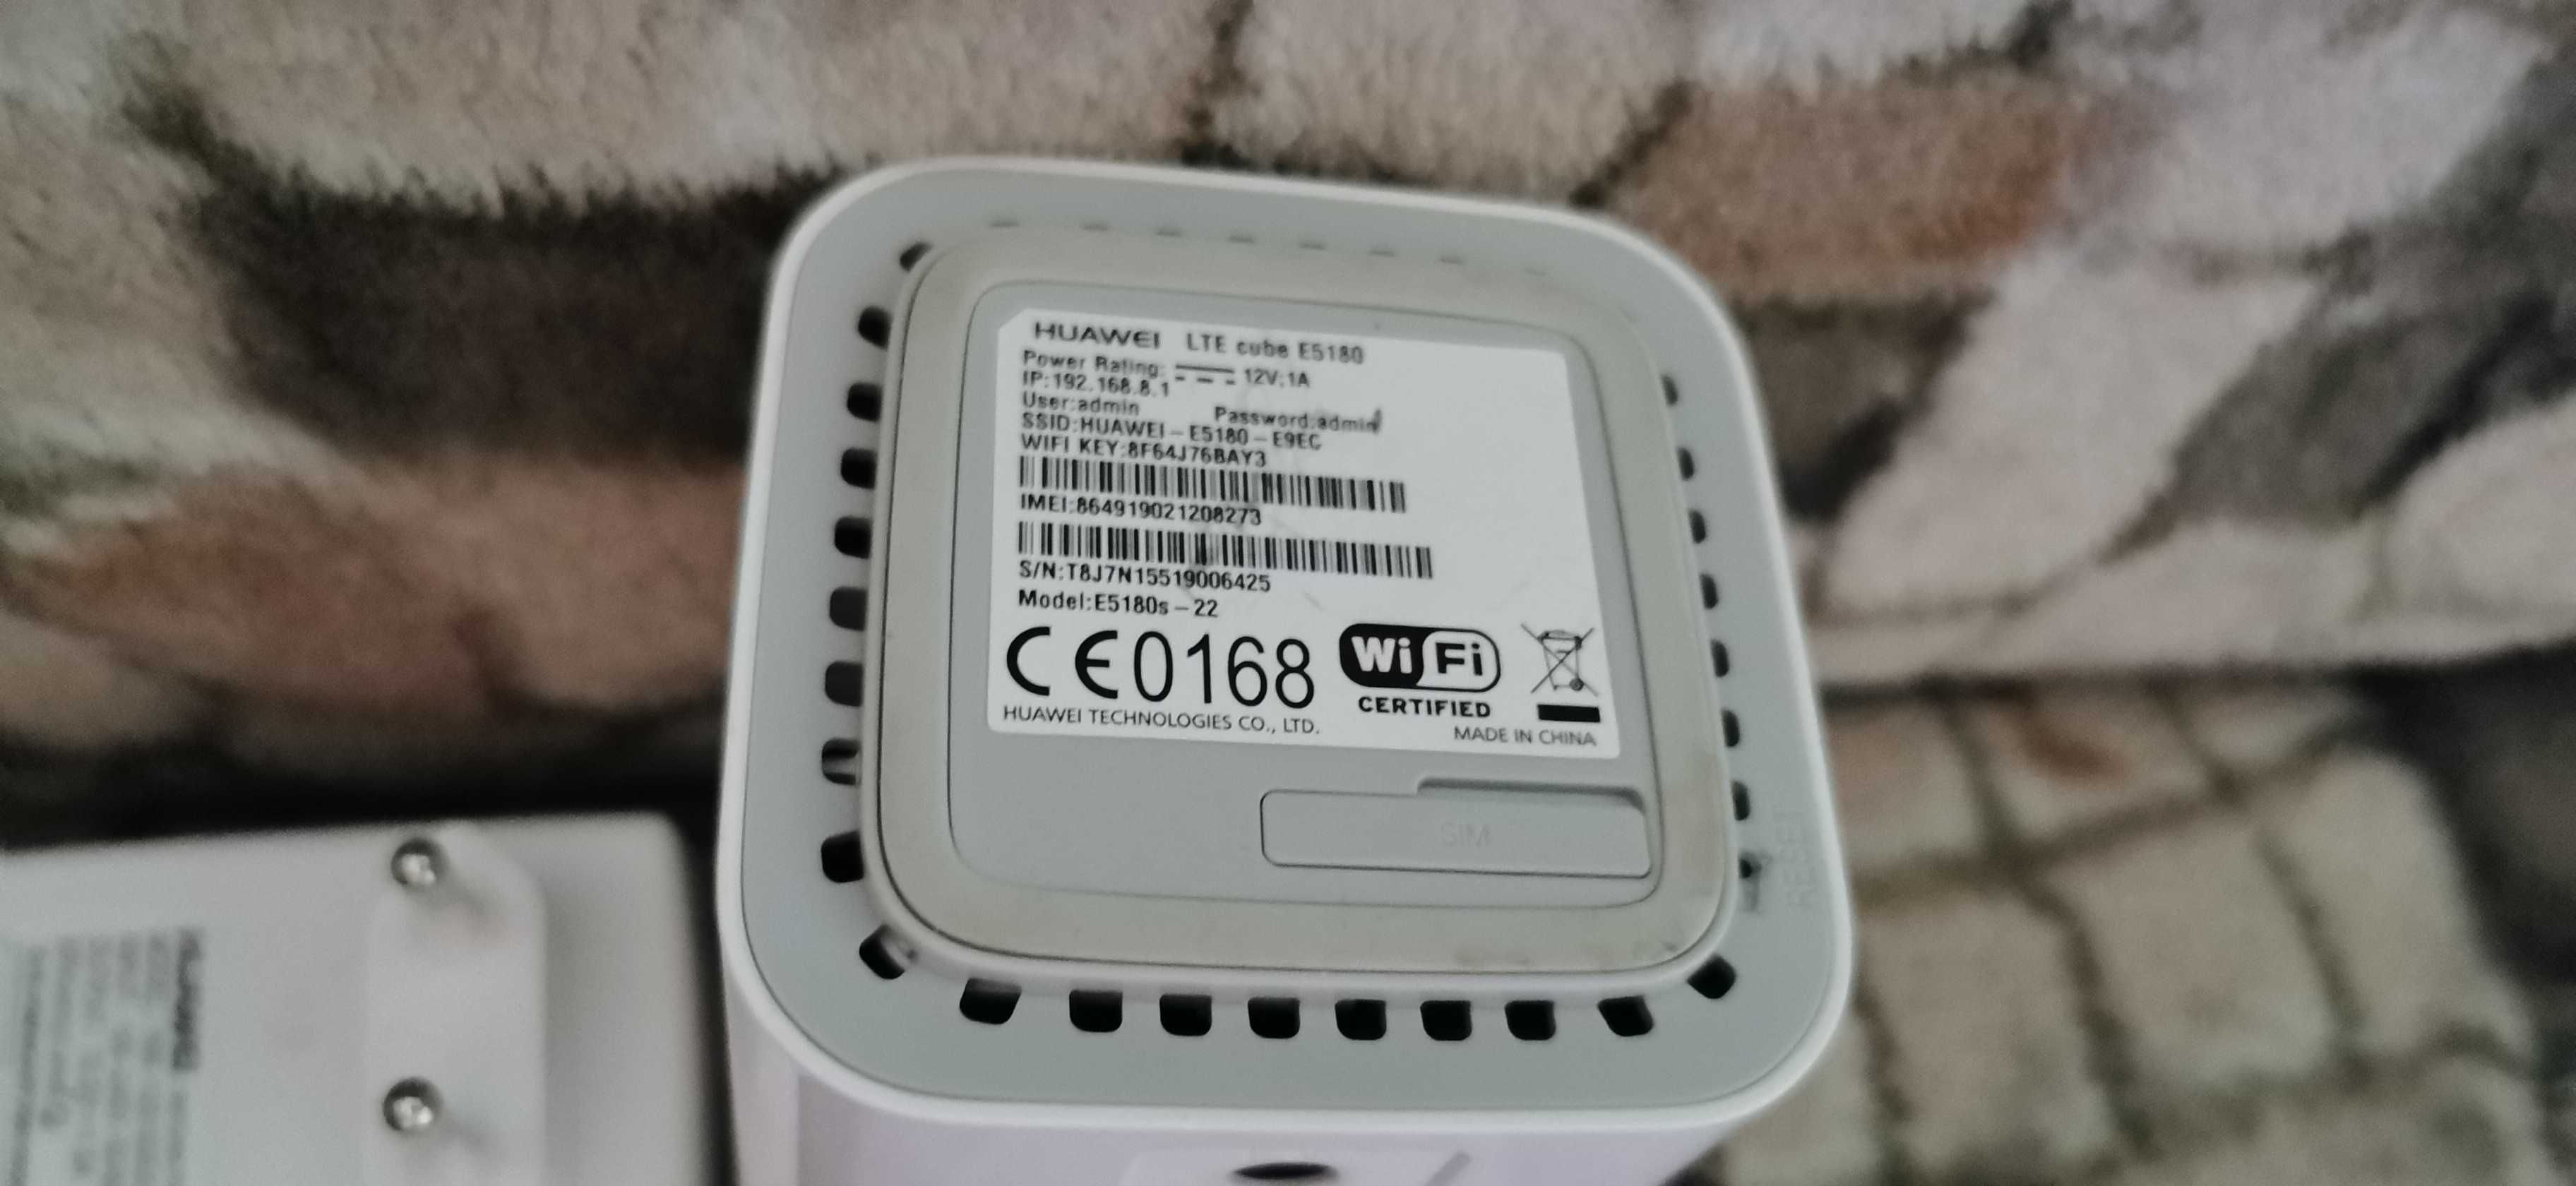 router modem 4g lte huwaei cube e5180